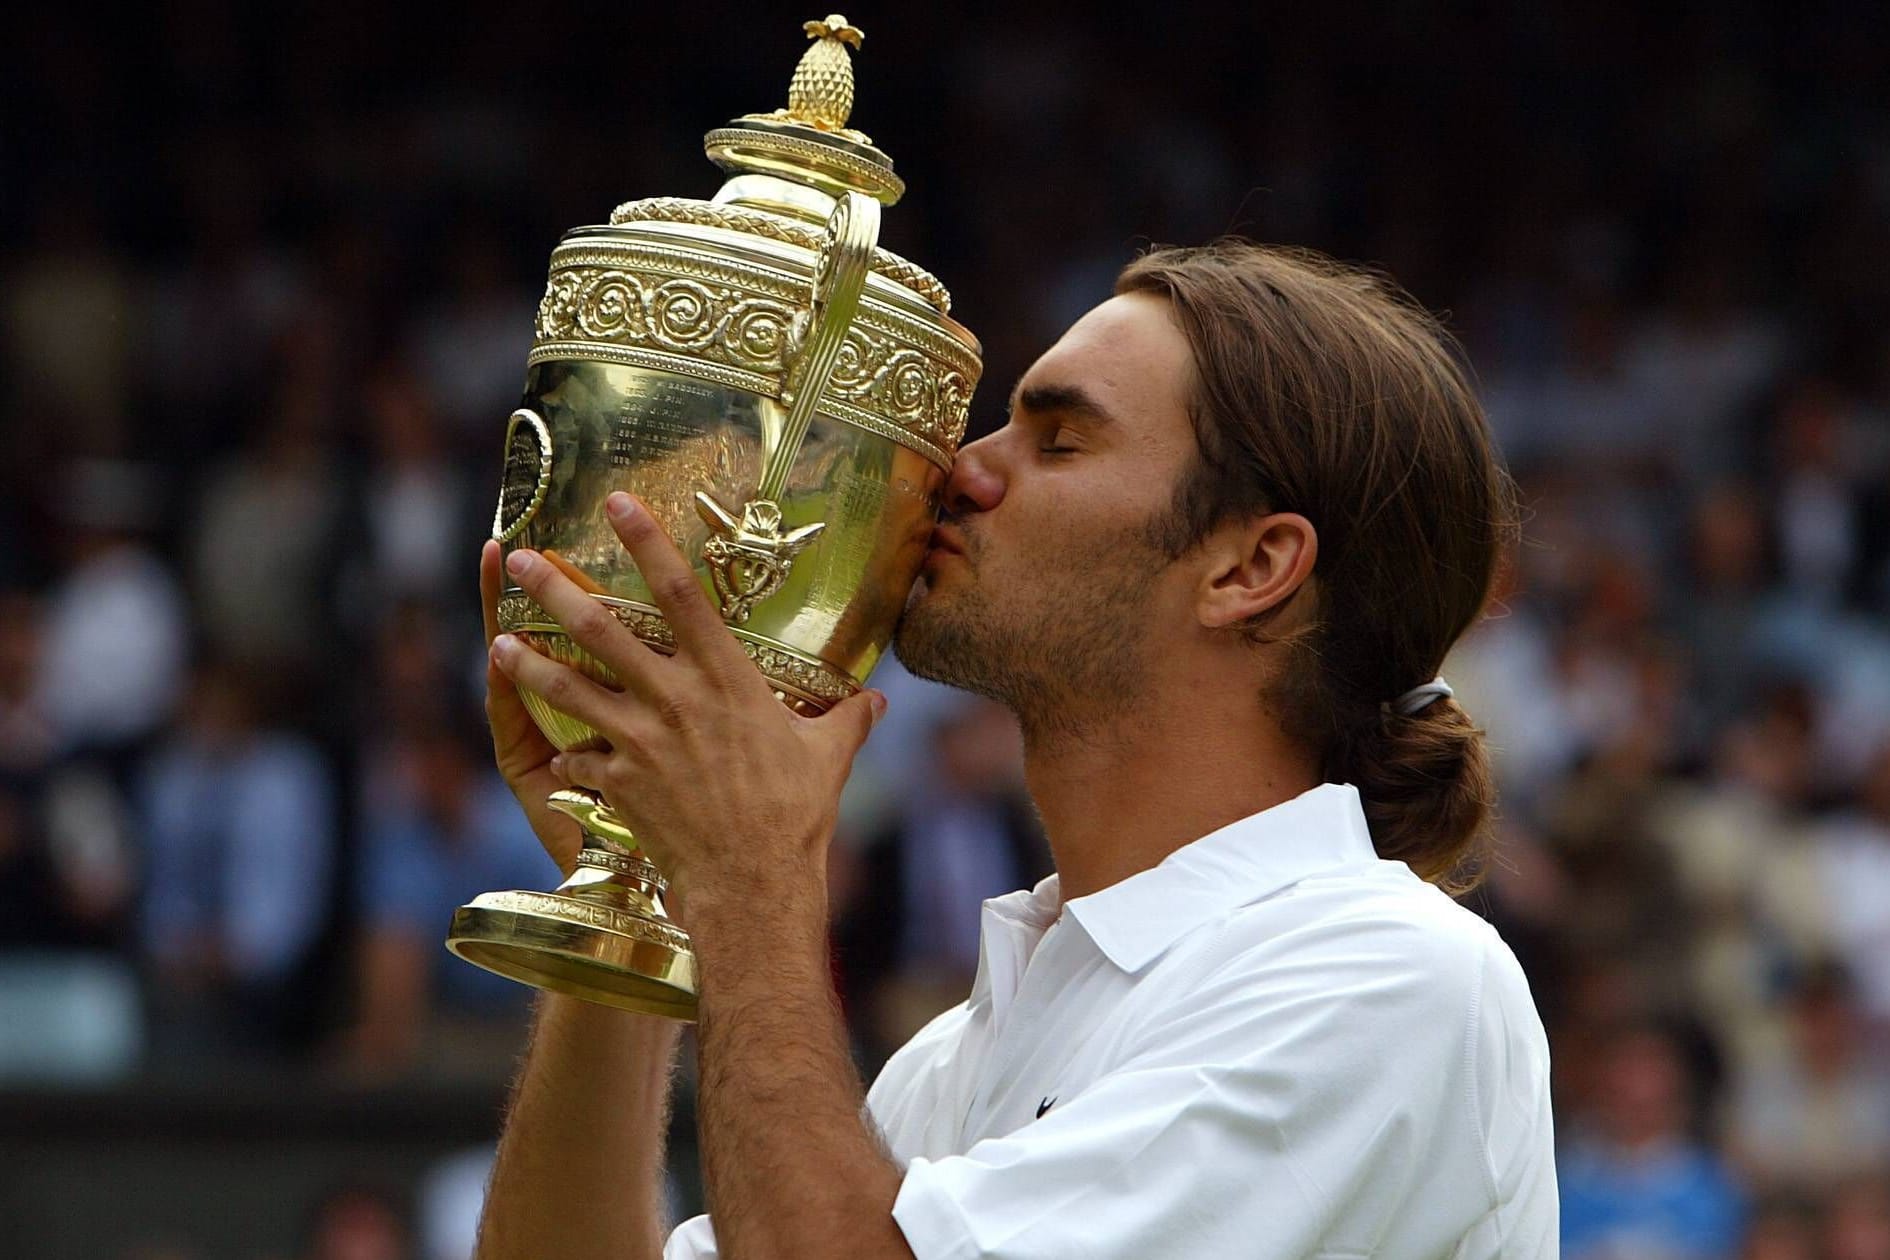 Wimbledon 2003: Zwei Jahre nach seinem Durchbruch gegen Pete Sampras, führt Federers Weg bis in Wimbledon-Finale. Dort kann er sich glatt in drei Sätzen gegen den Australier Mark Philippoussis durchsetzen und gewinnt seinen ersten Grand-Slam-Titel.